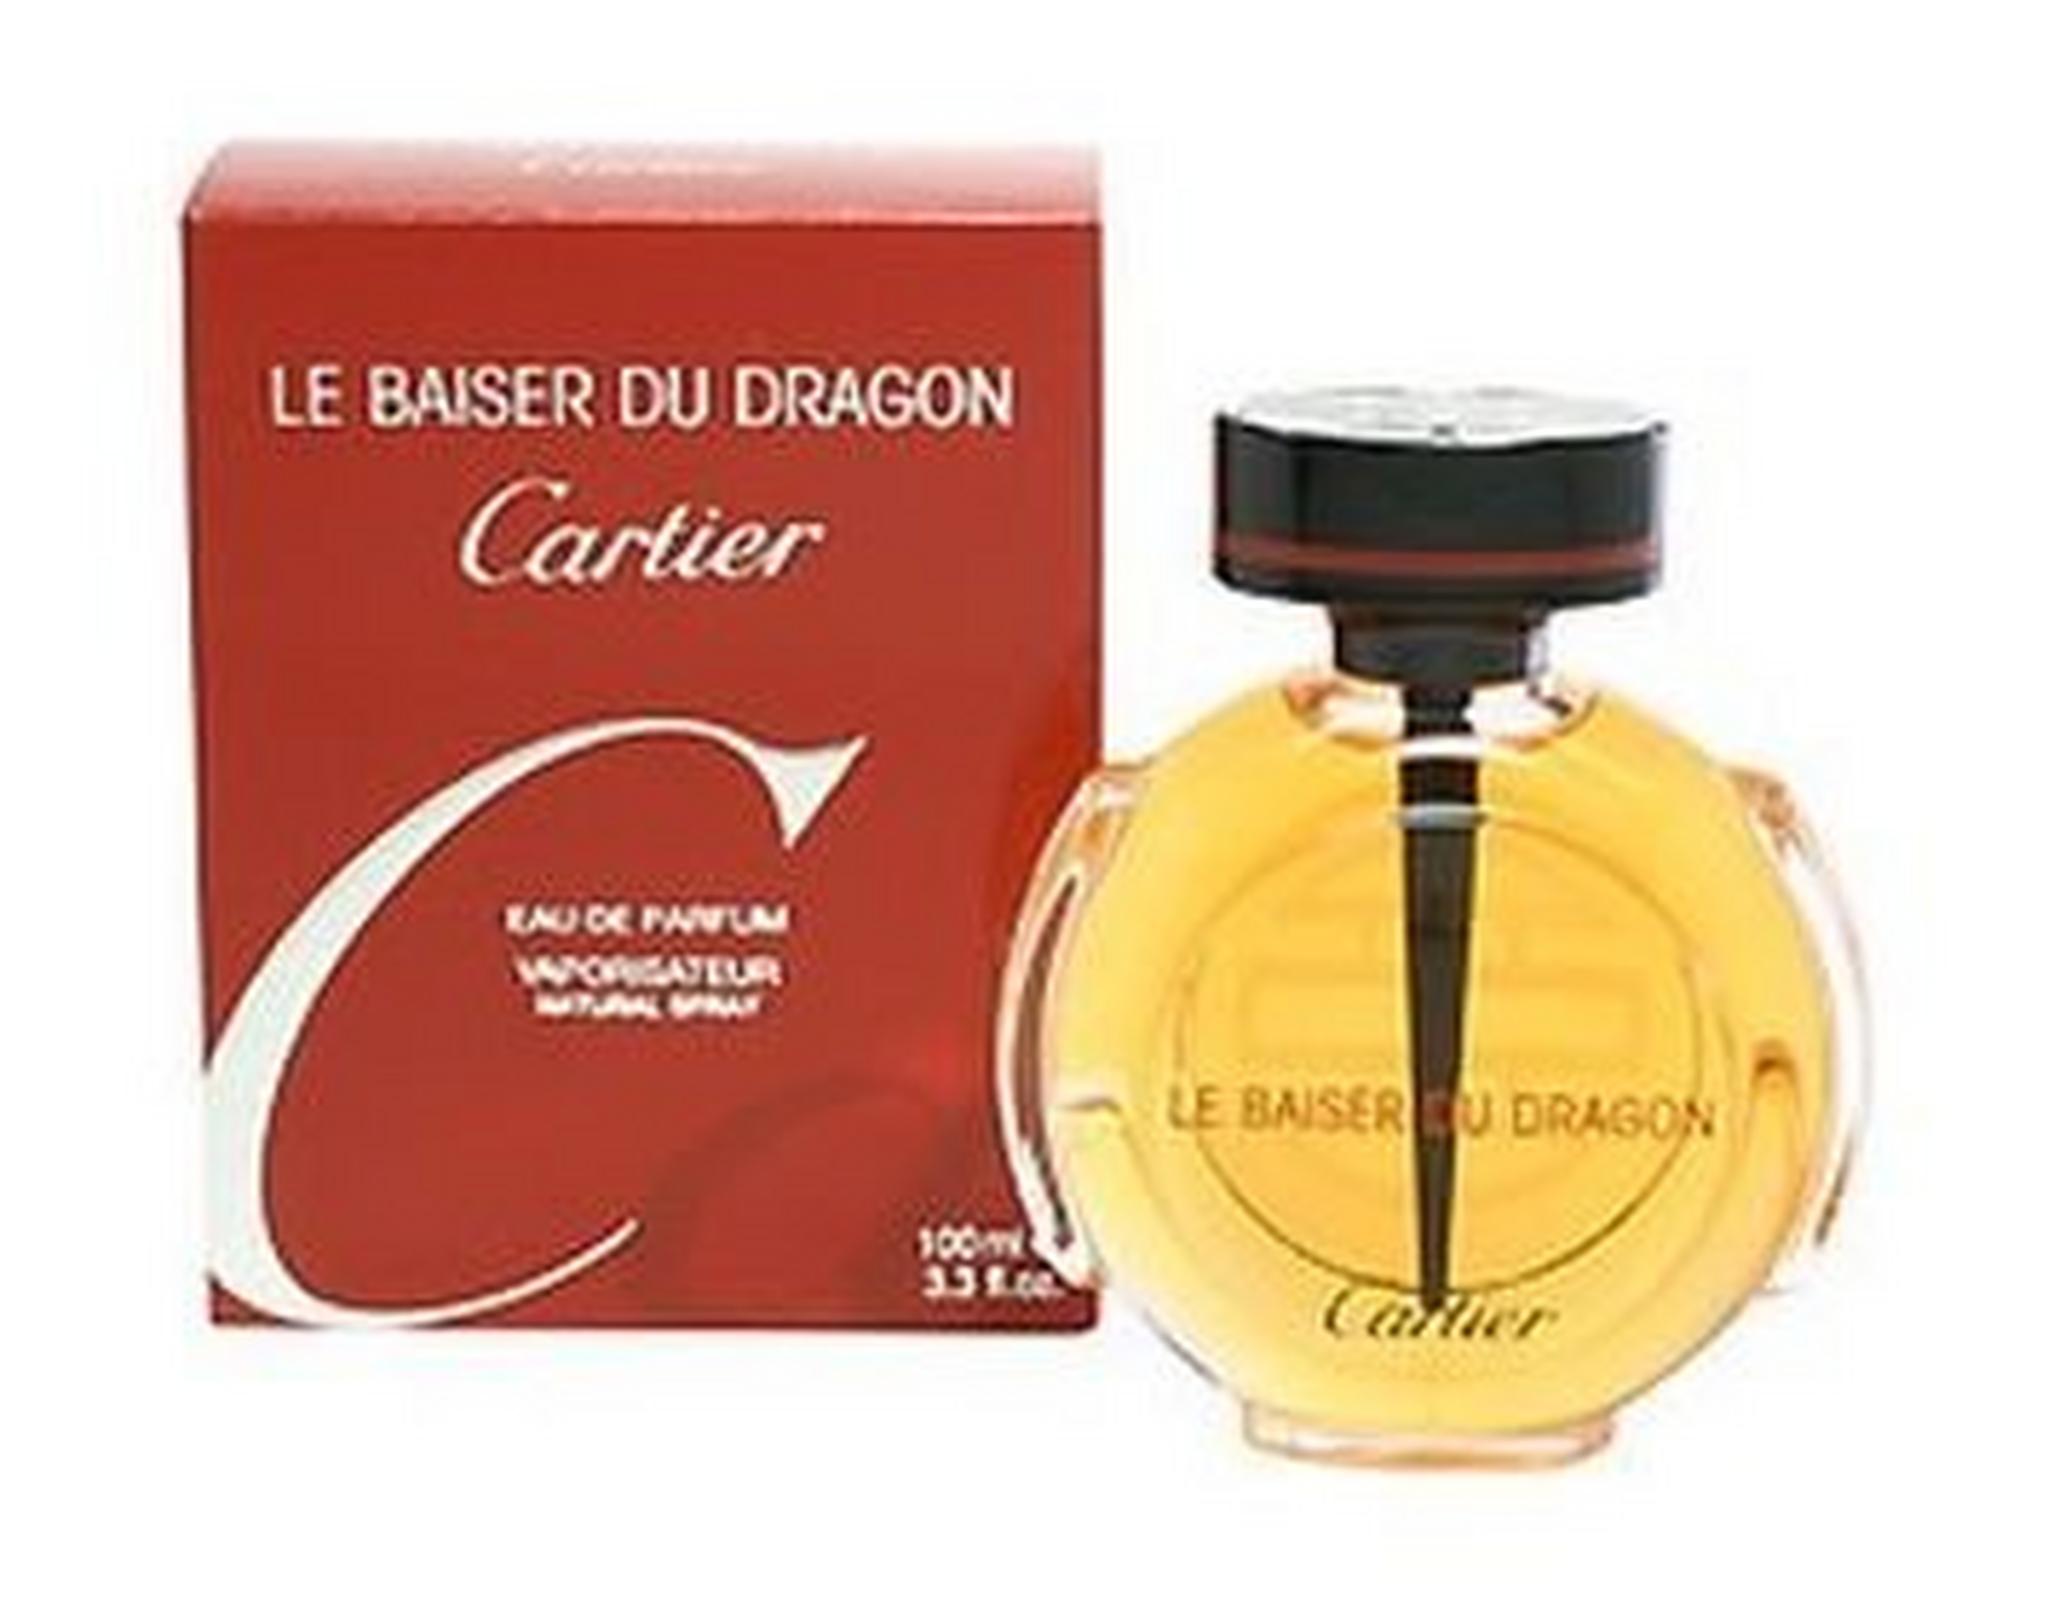 Cartier Le Baiser Du Drago For Women 100 ml Eau de Parfum